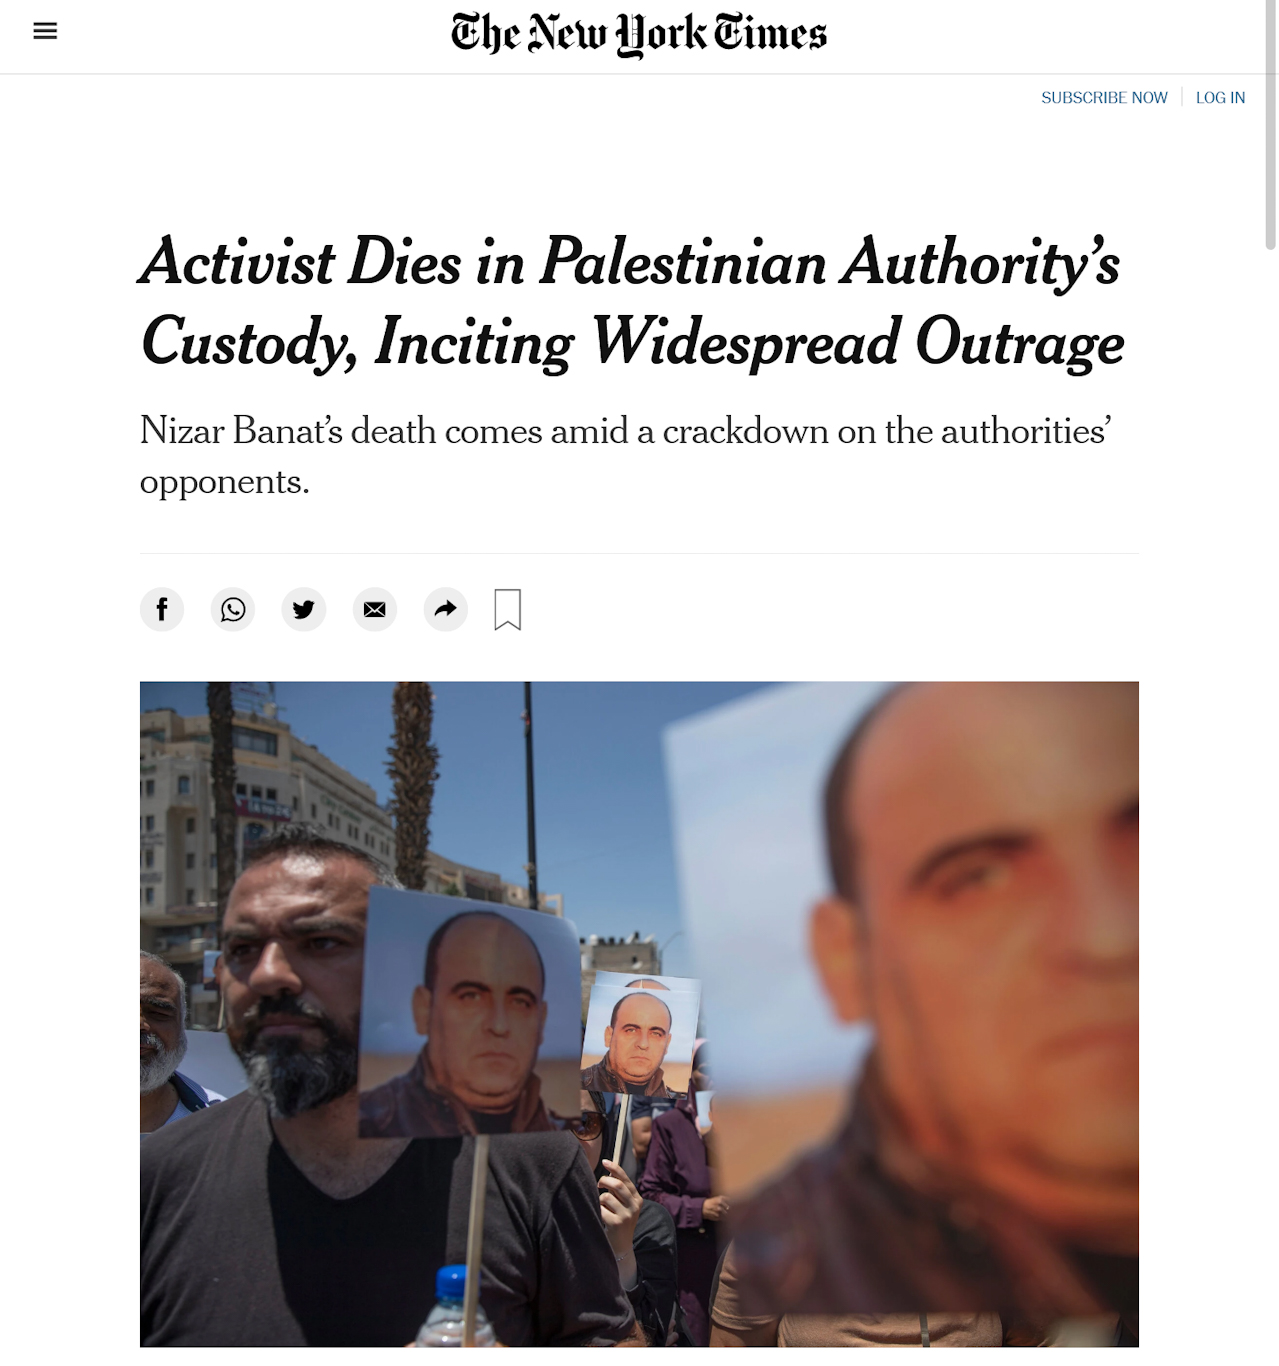 Убежденный защитник Израиля, NYT поспешил осудить проступки ПА.